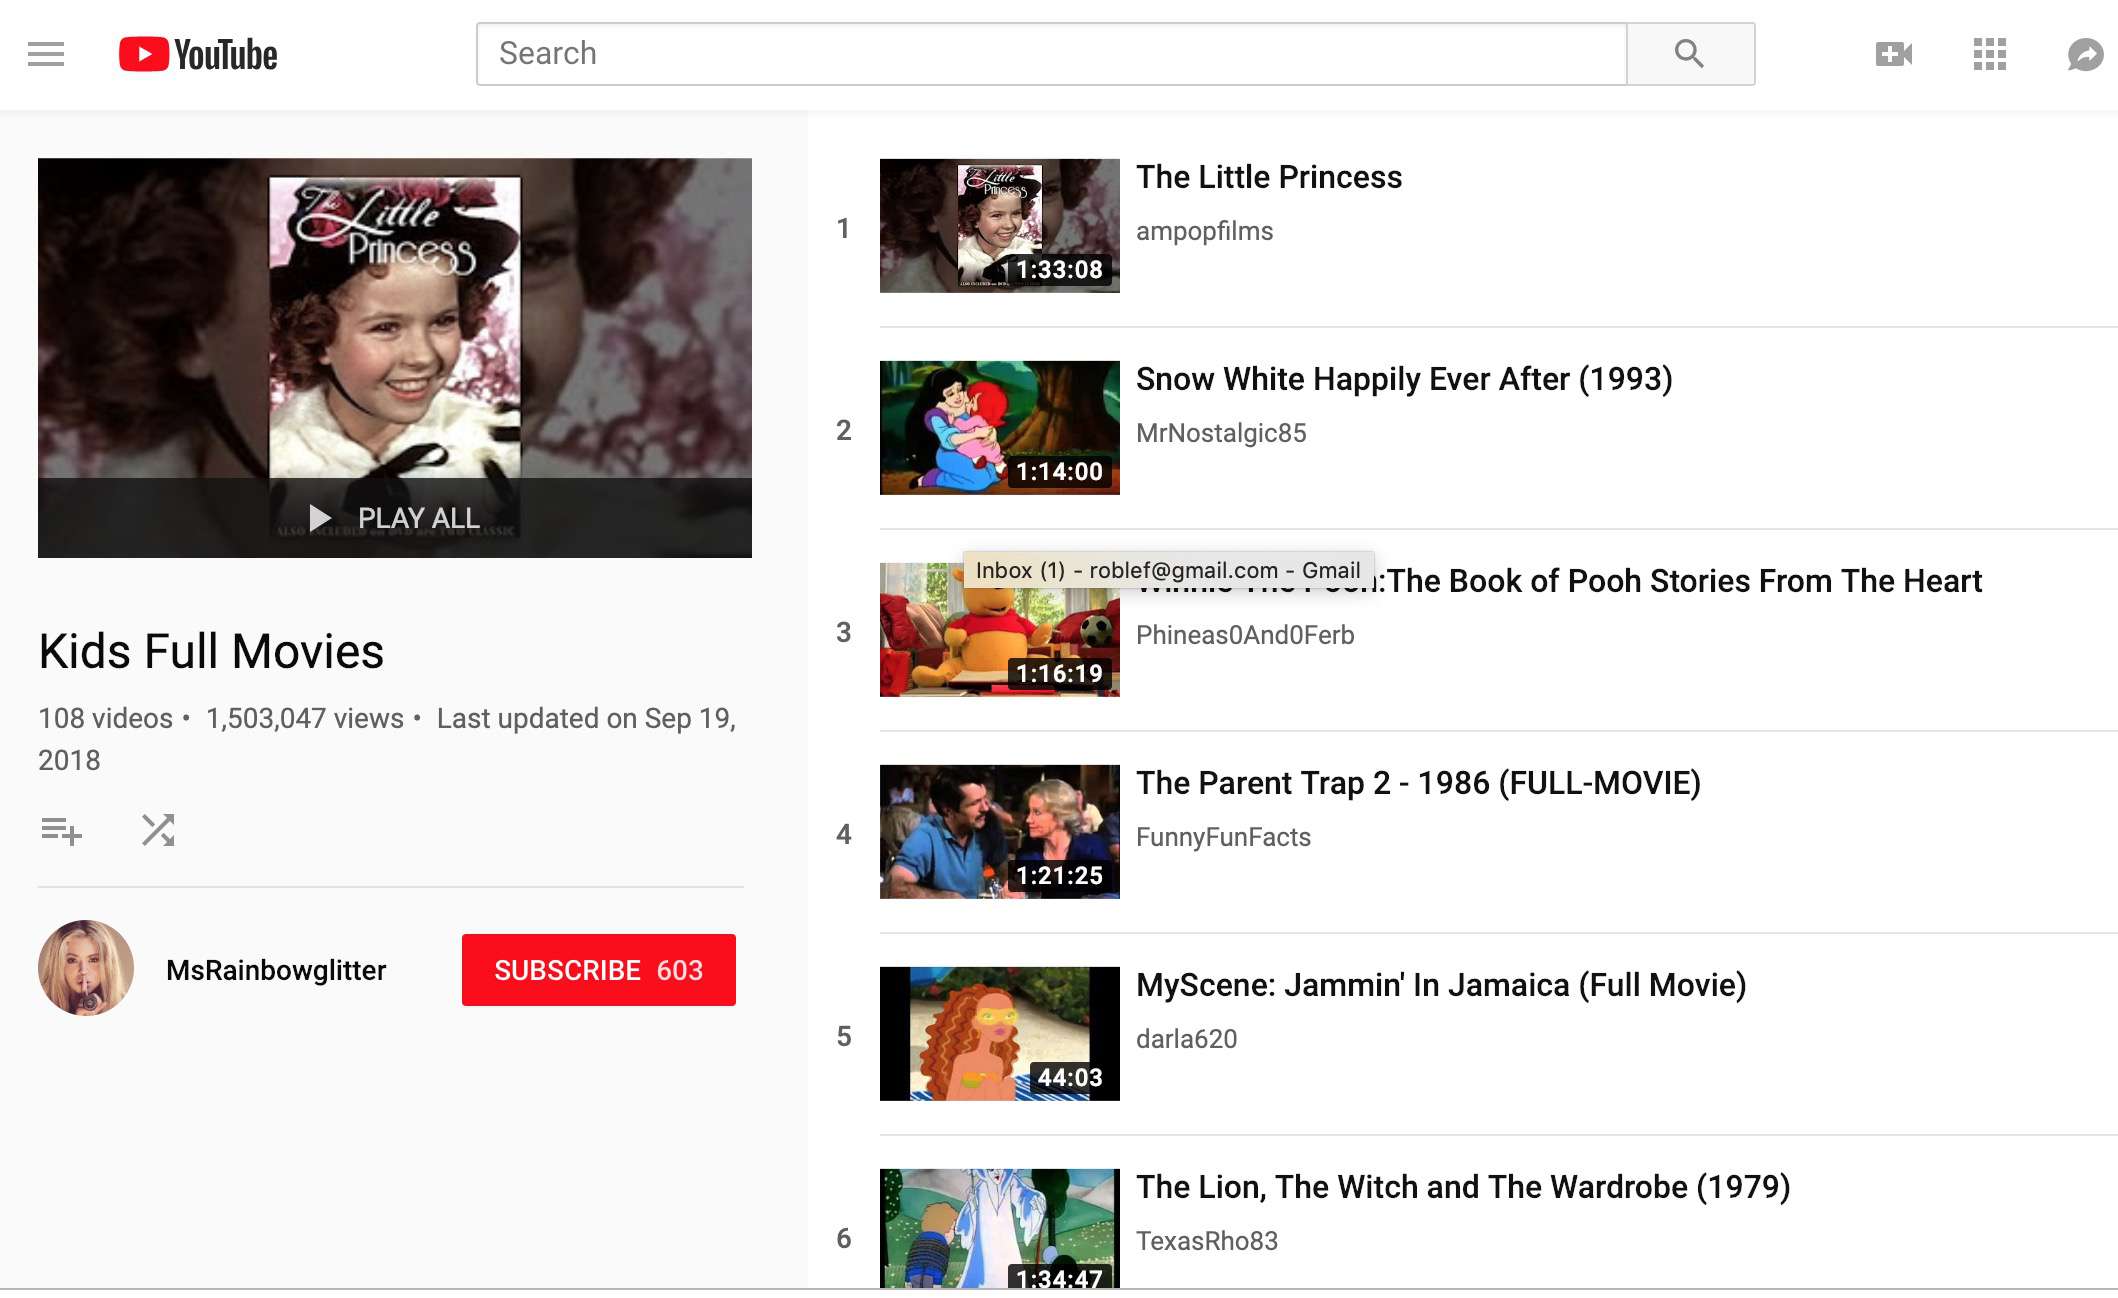 Seznam videí pro děti na YouTube